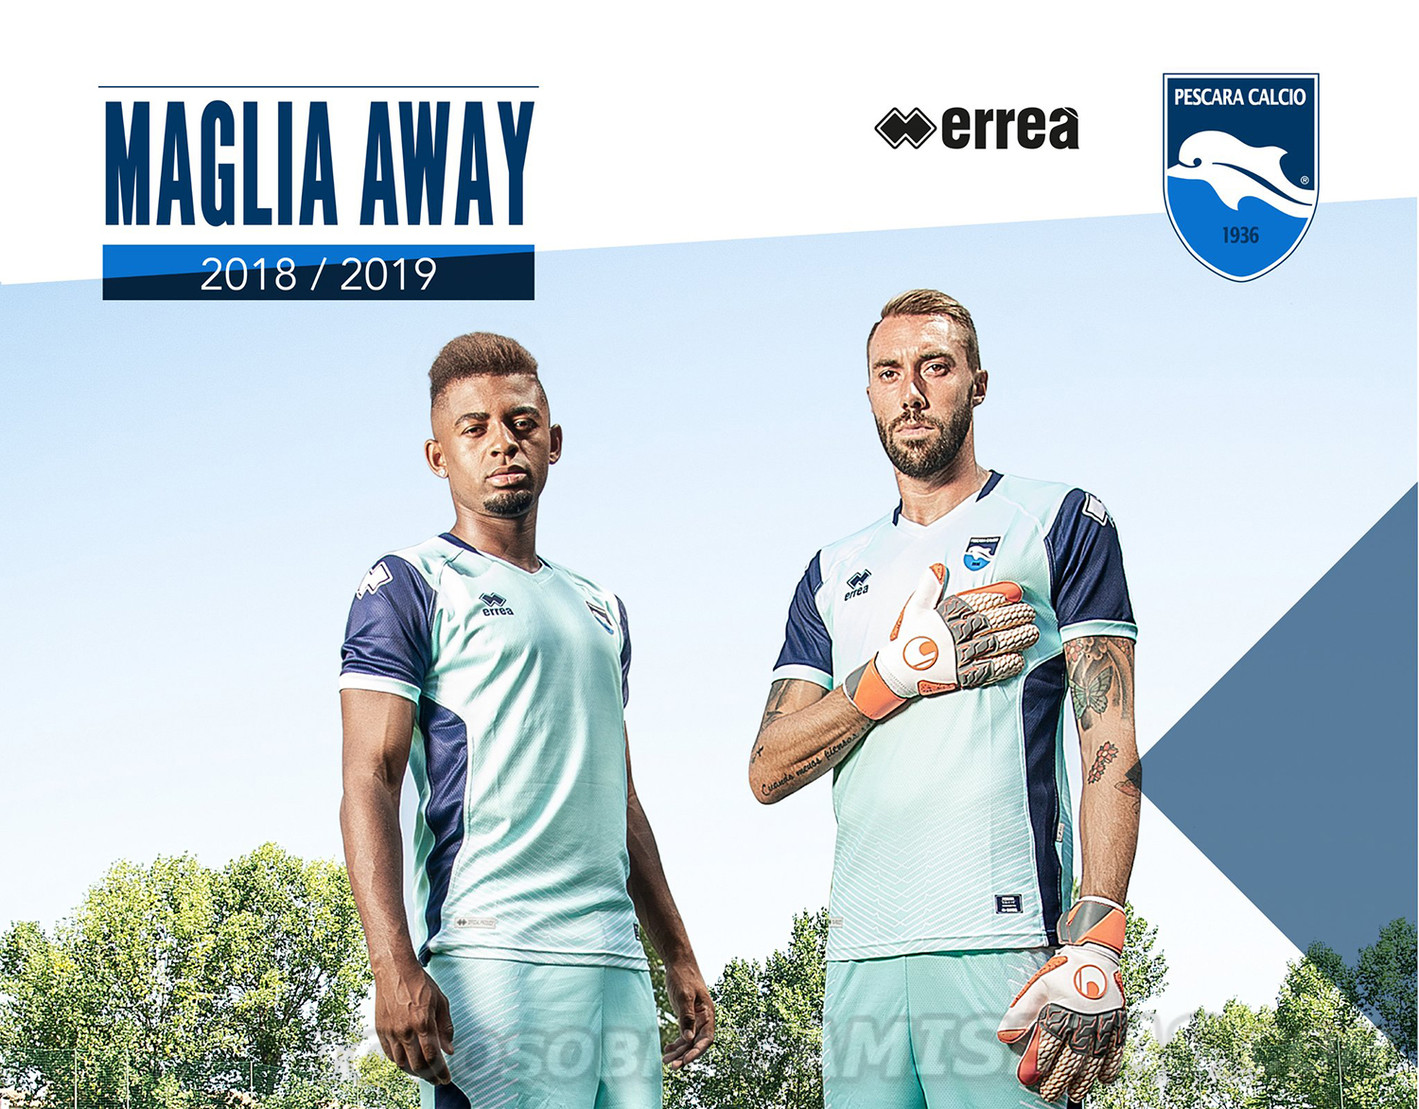 Pescara Calcio Erreà Kits 2018-19